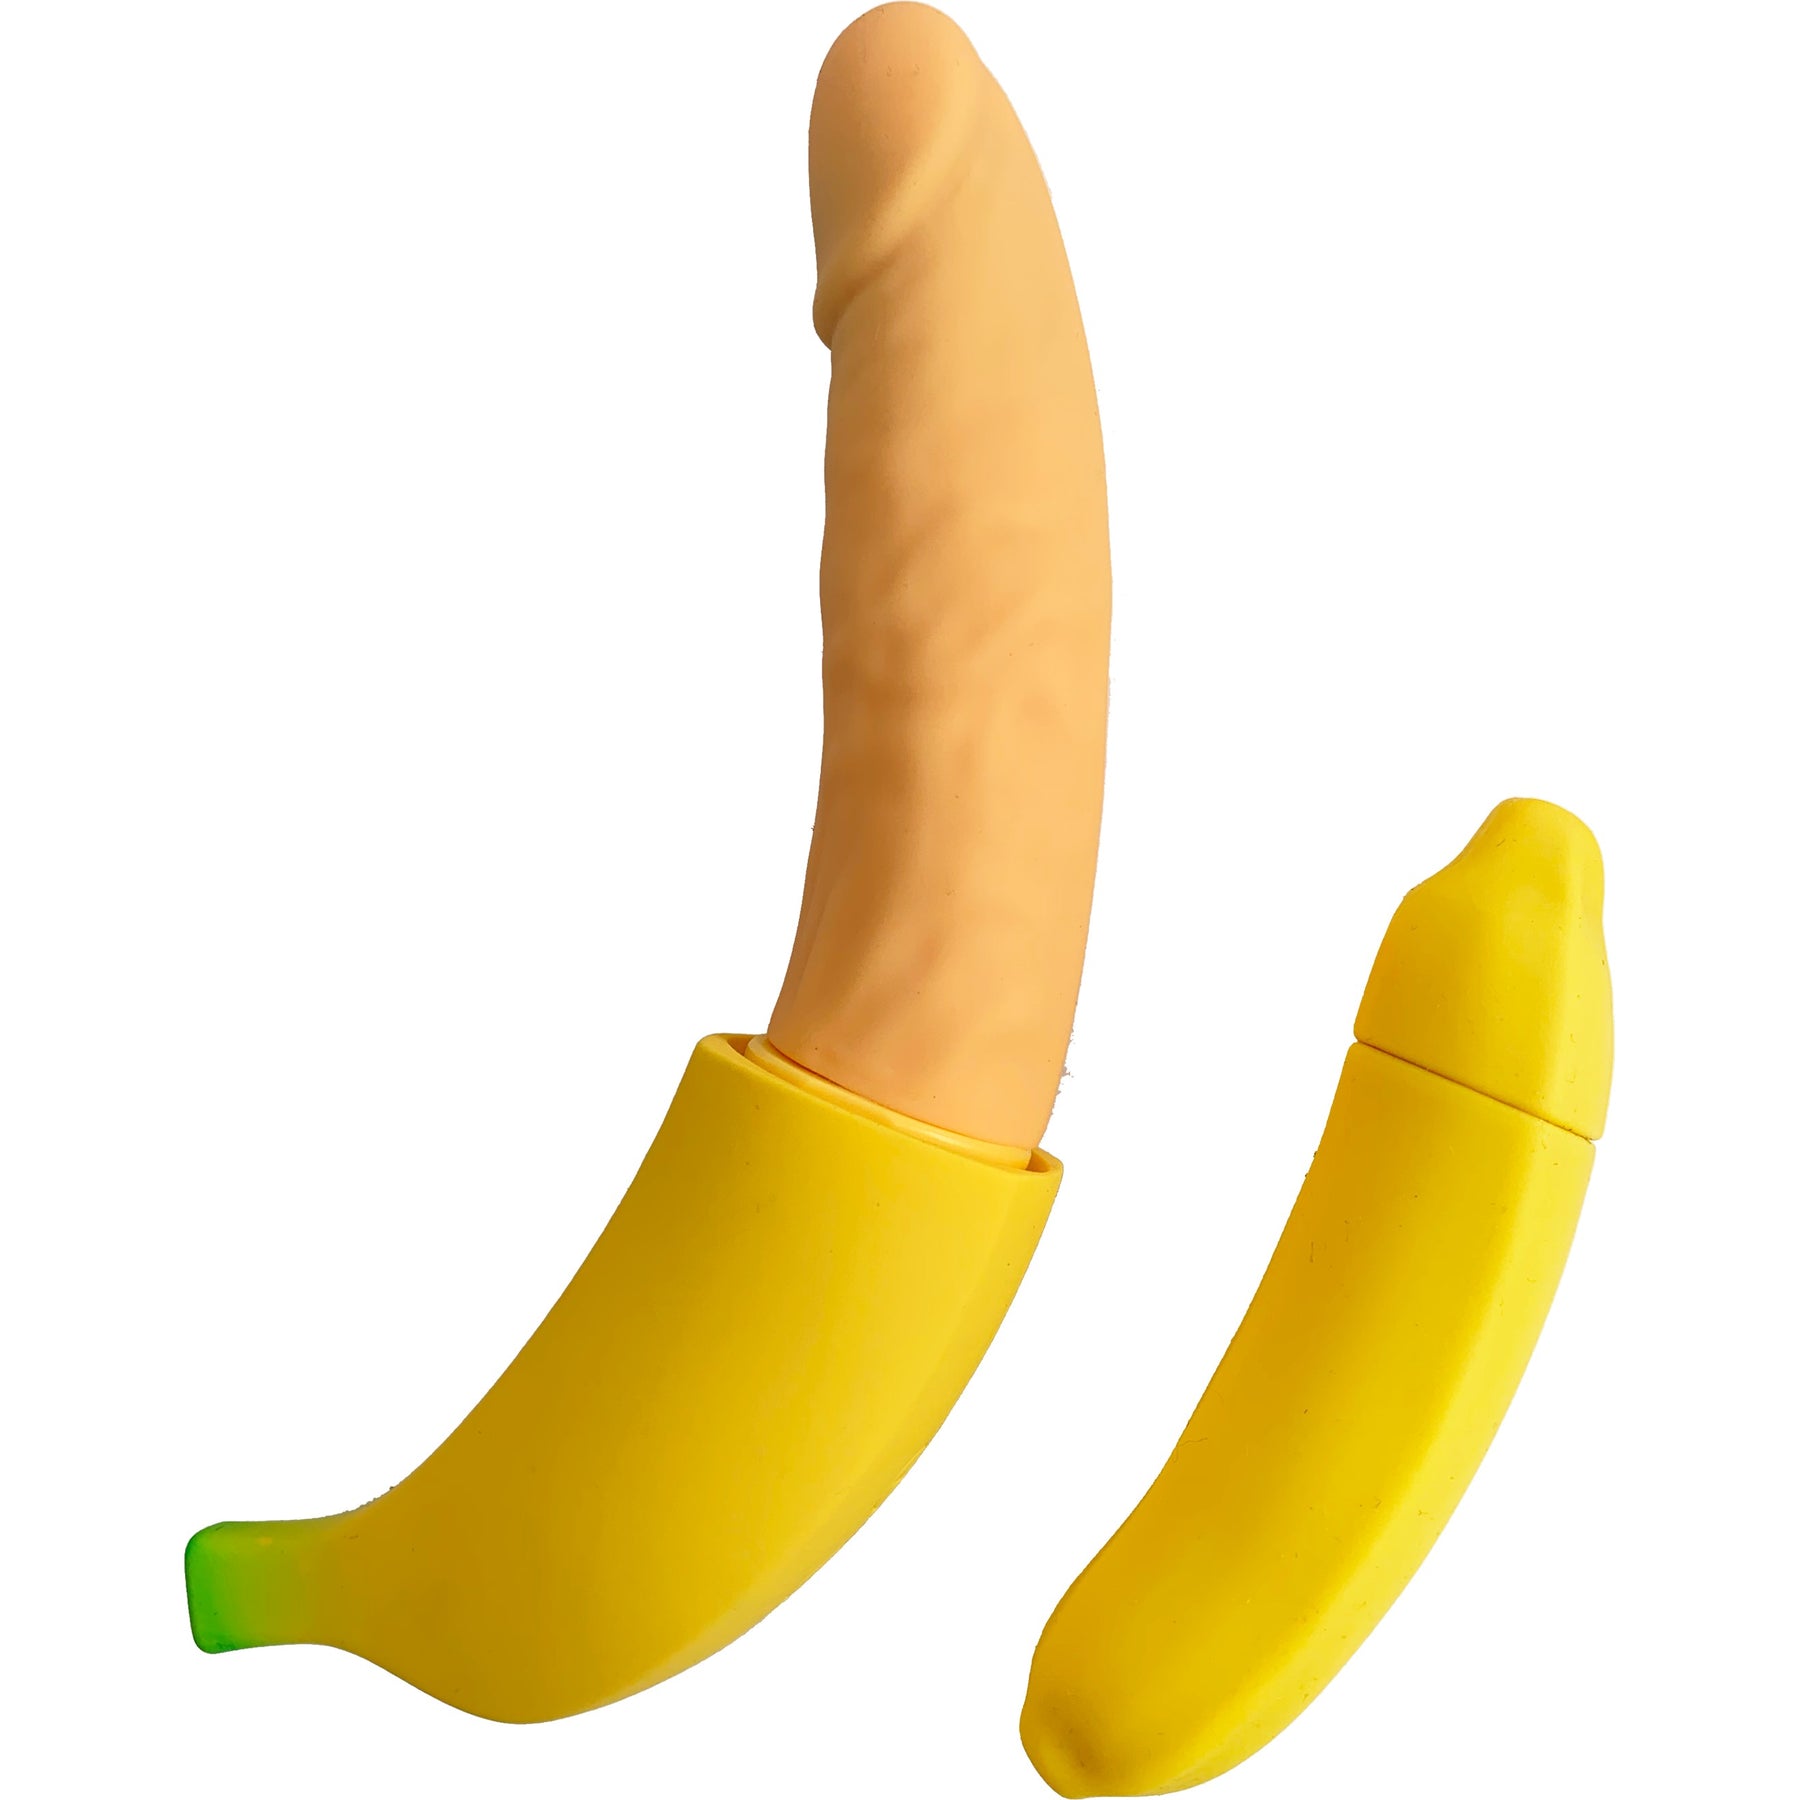 член виде банана фото 14